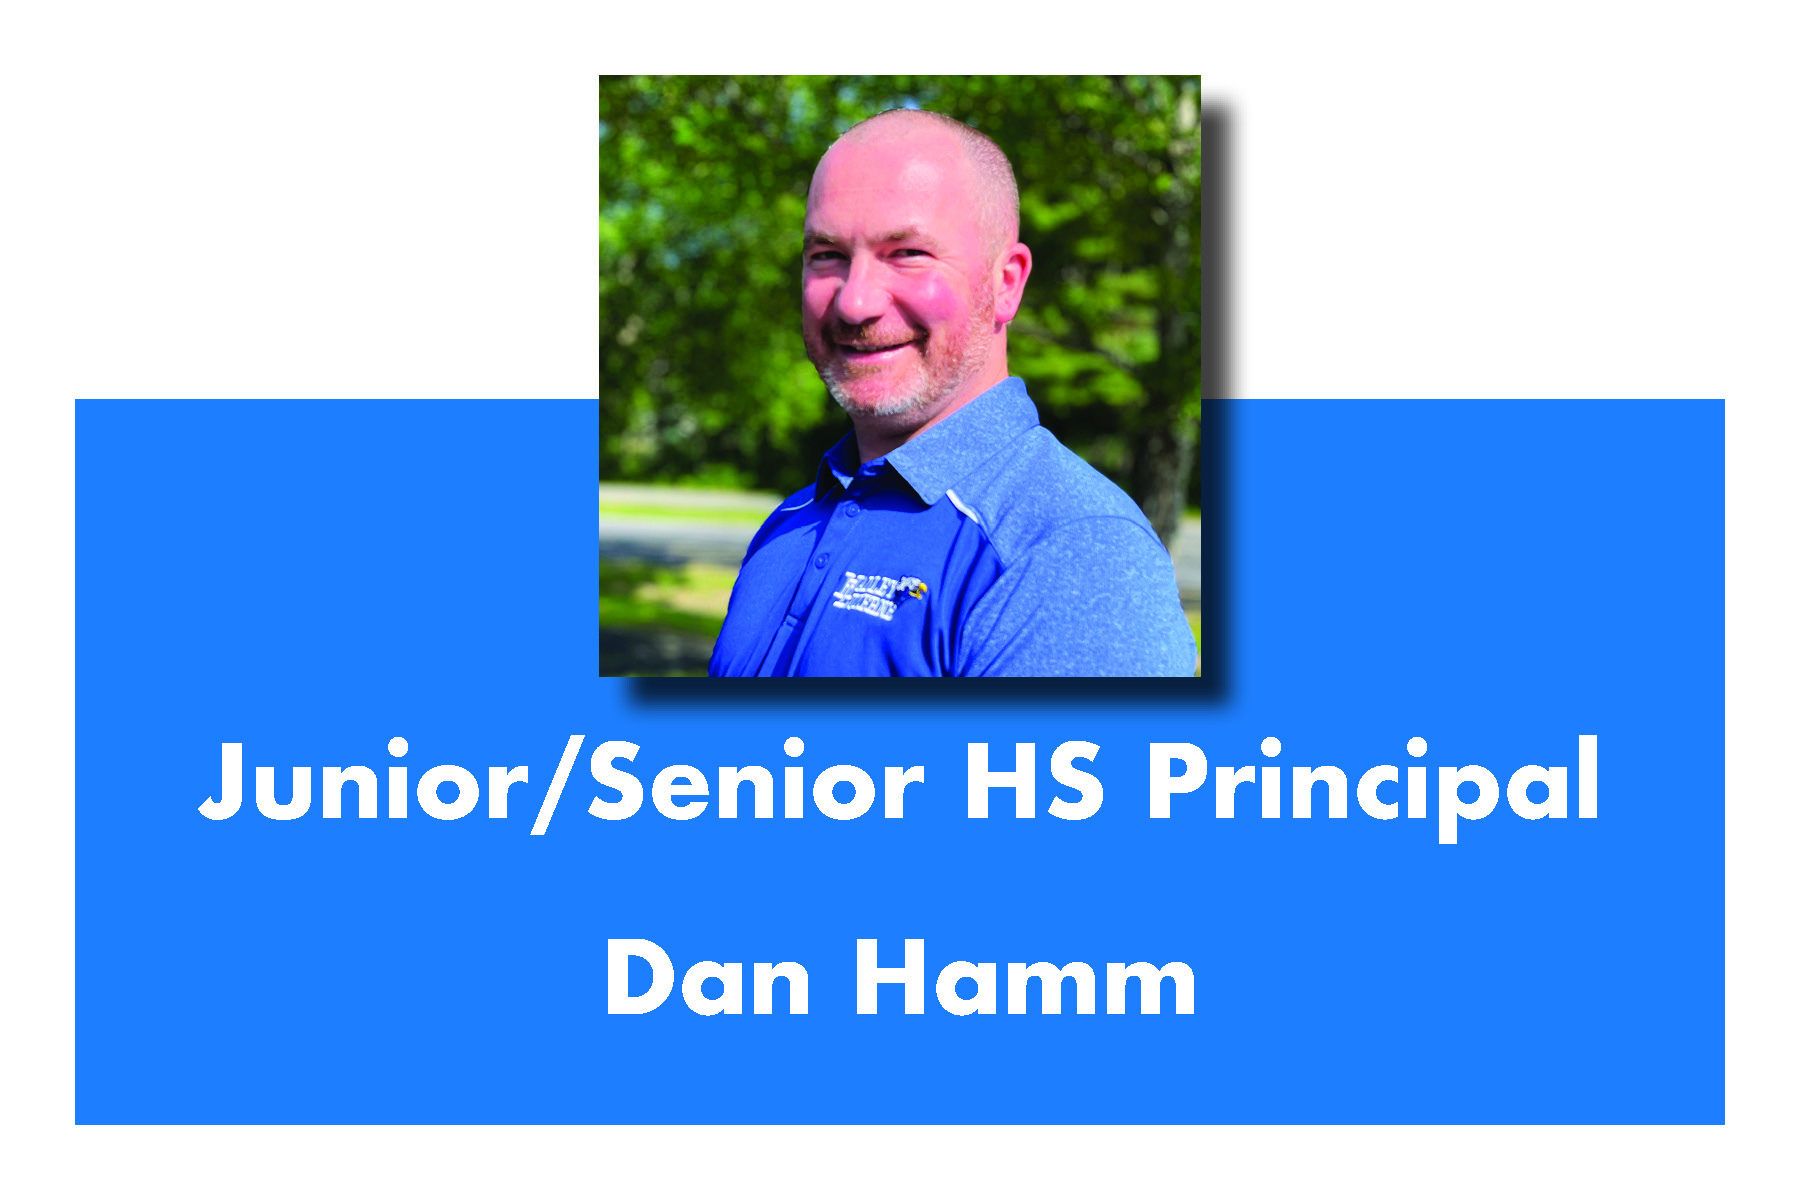 Principal Dan Hamm